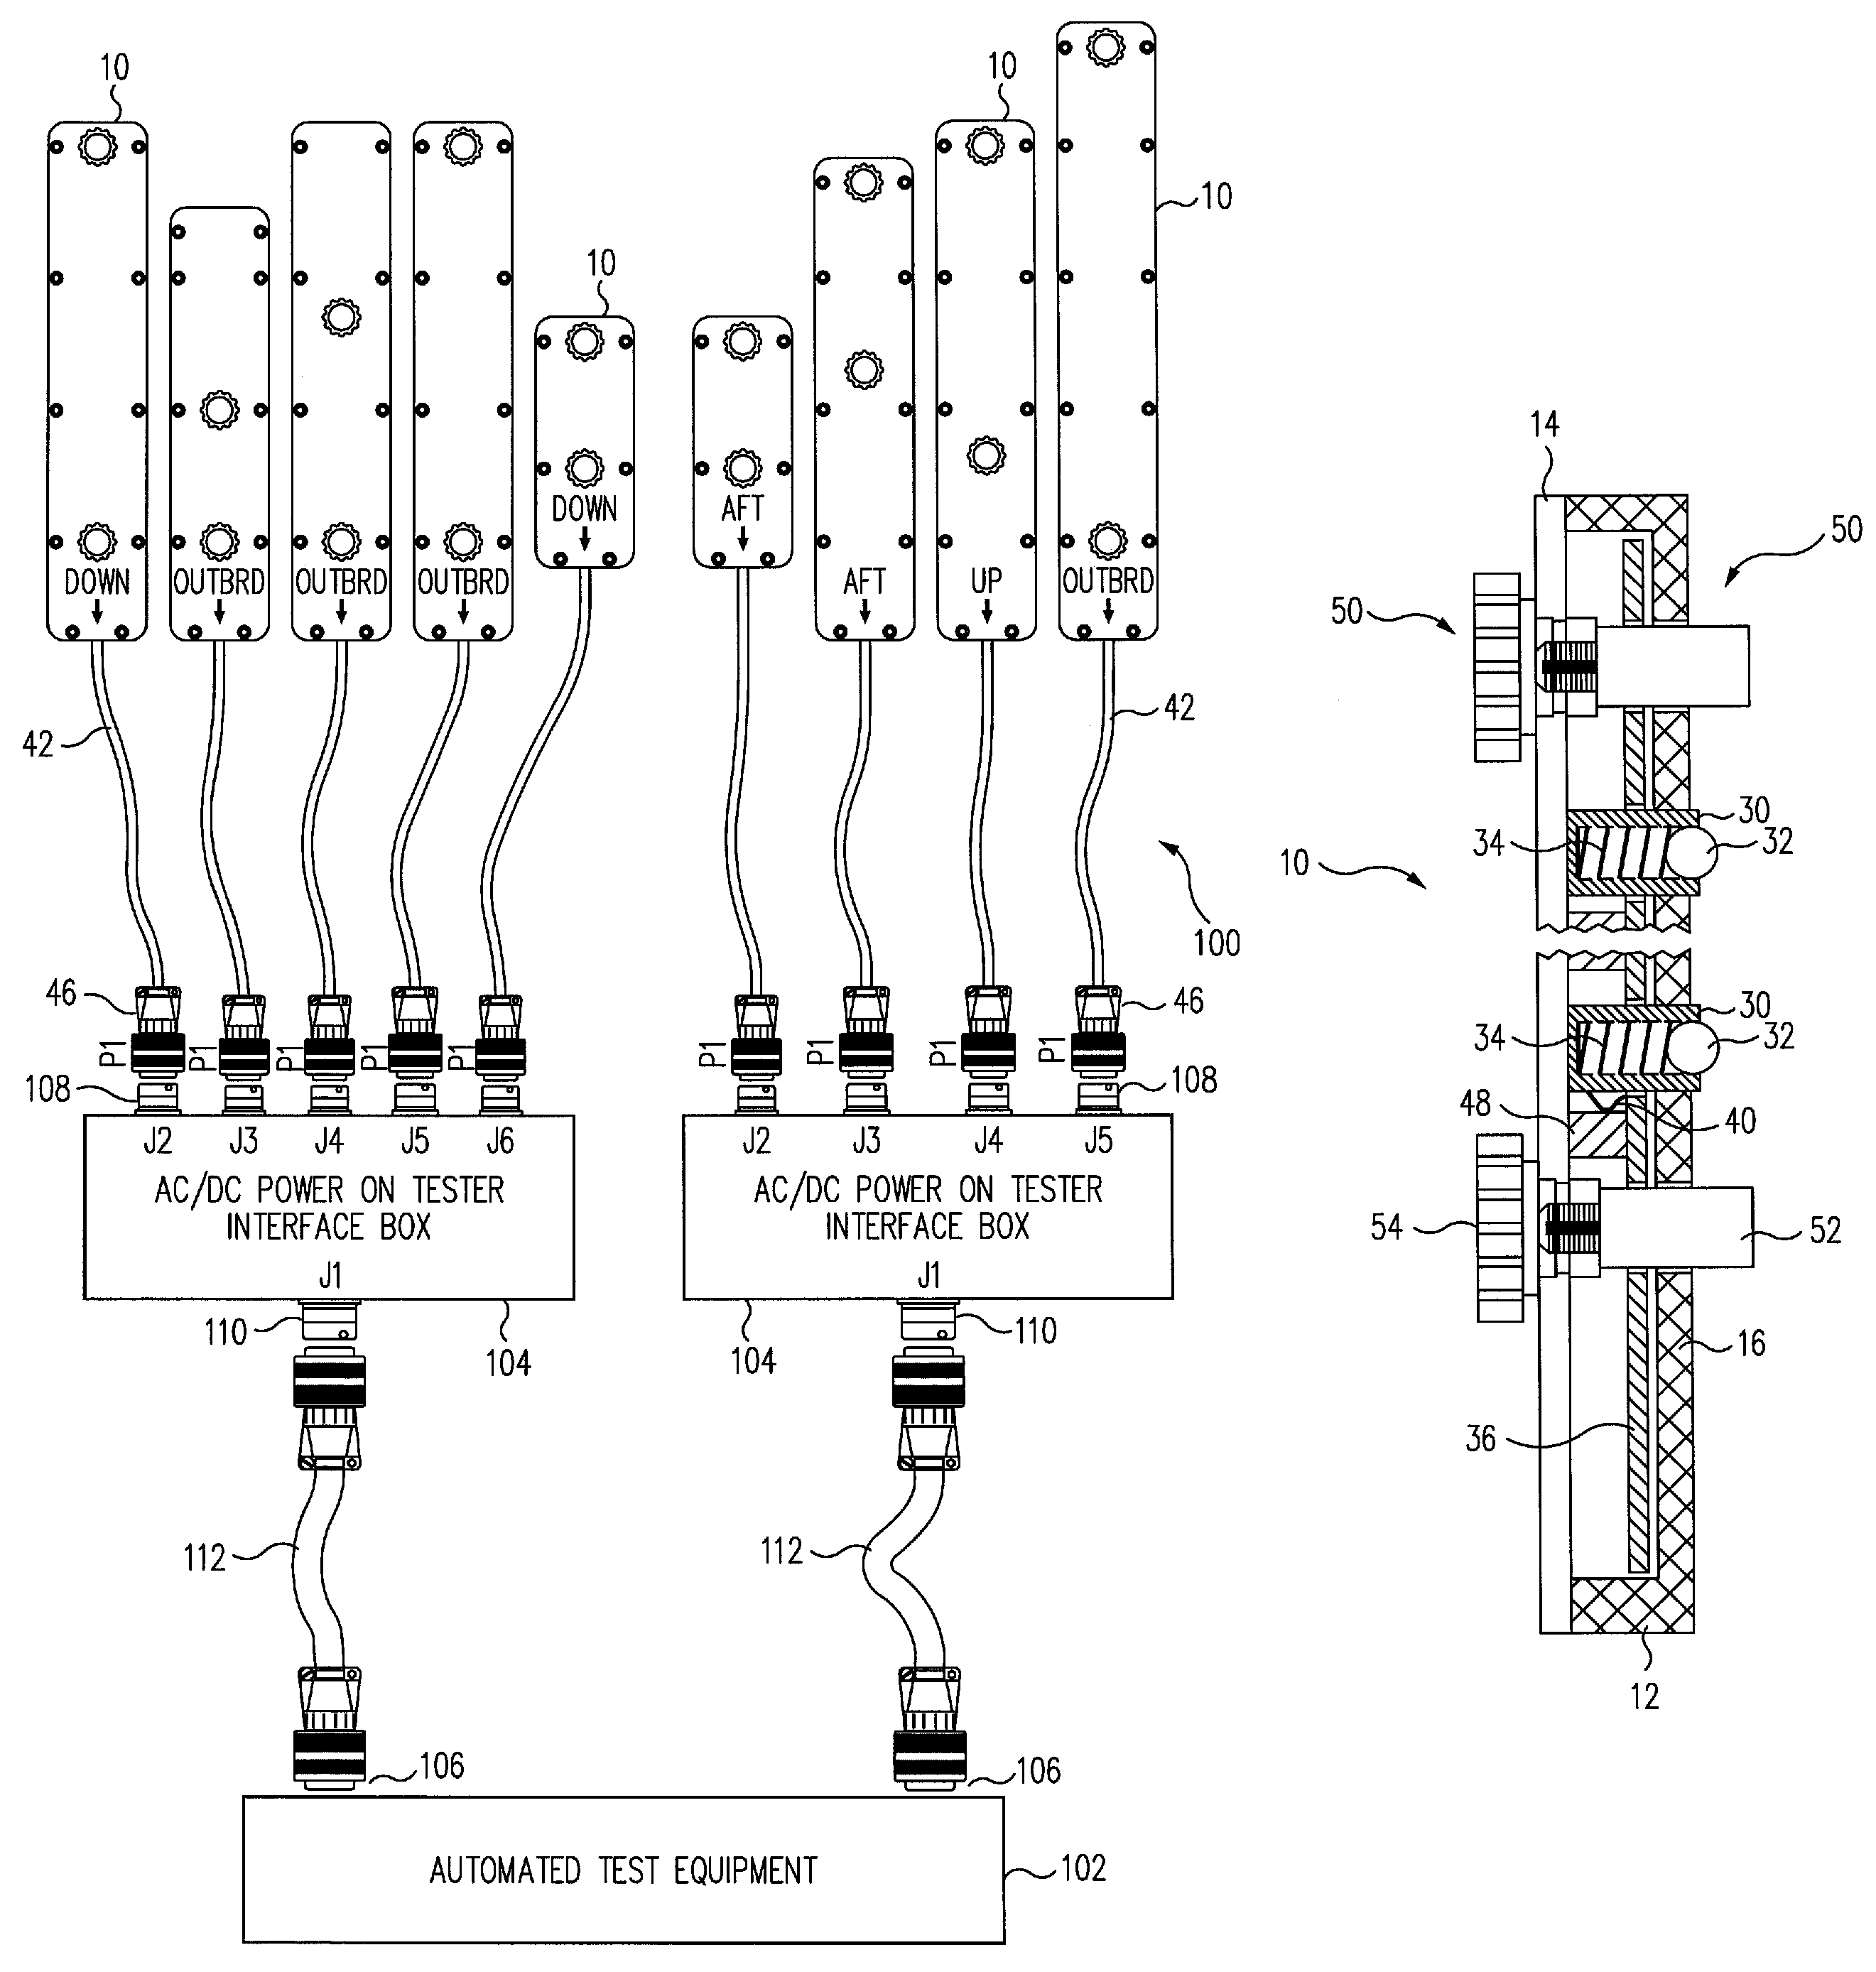 Terminal strip contacting adapter